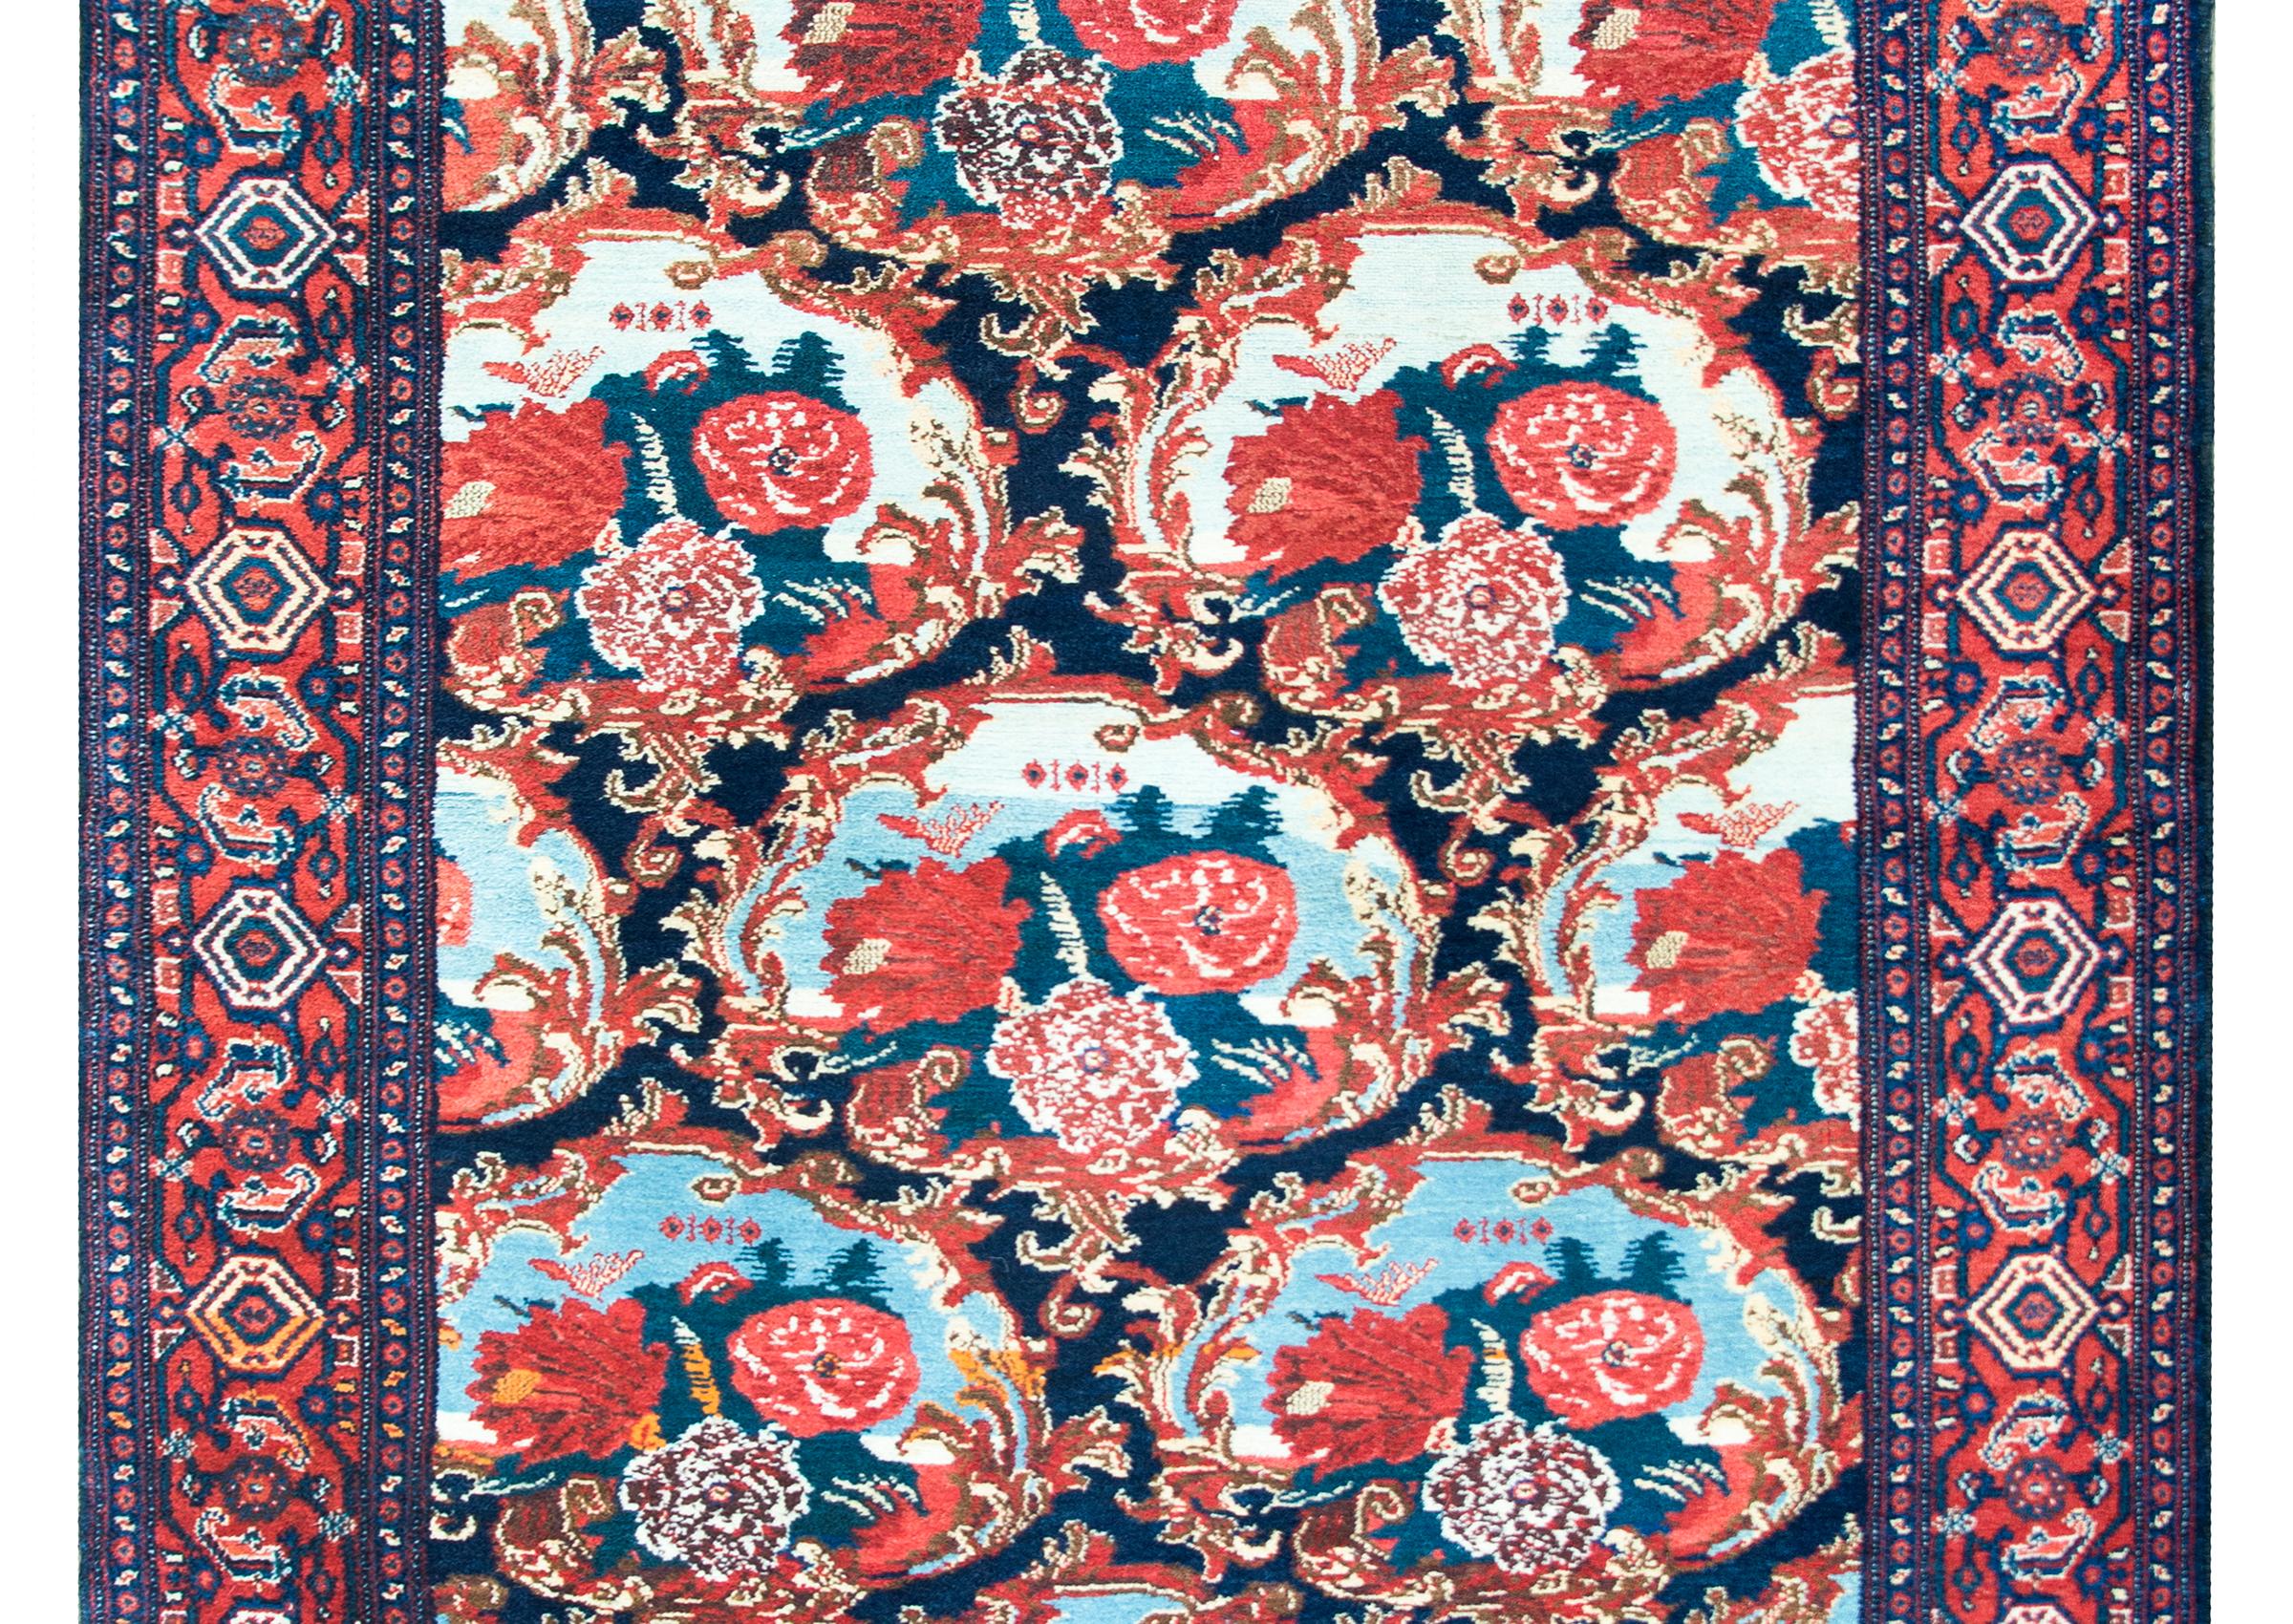 Un incroyable tapis persan du début du 20e siècle avec les plus beaux médaillons floraux à grande échelle, chacun entouré de cadres floraux baroques, et tissés en cramoisi brillant, rose, blanc, indigo clair et foncé, et tous entourés d'un motif